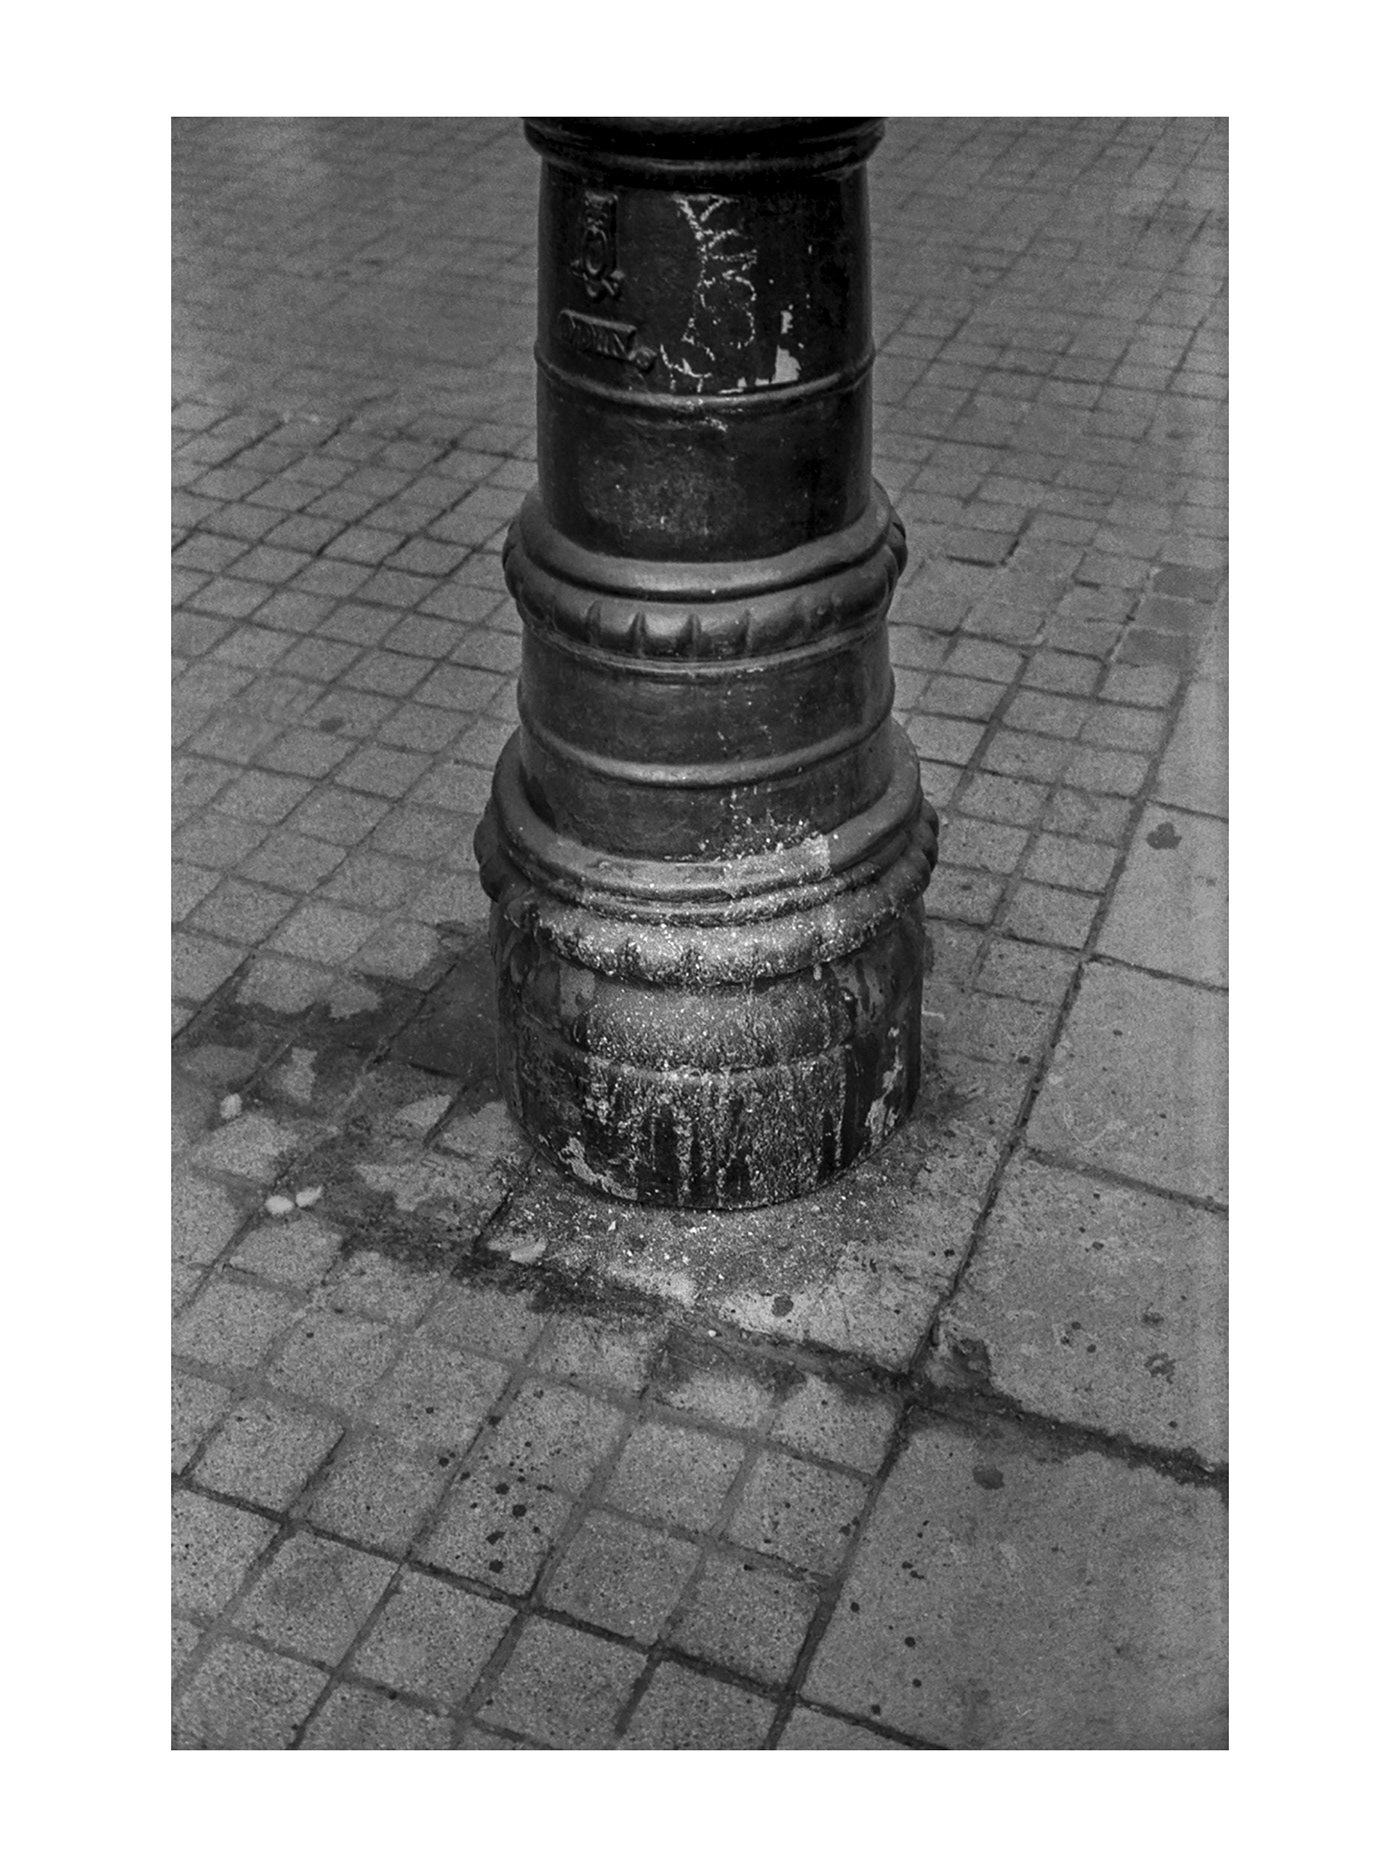 35mm analogica black and white fotografia de calle